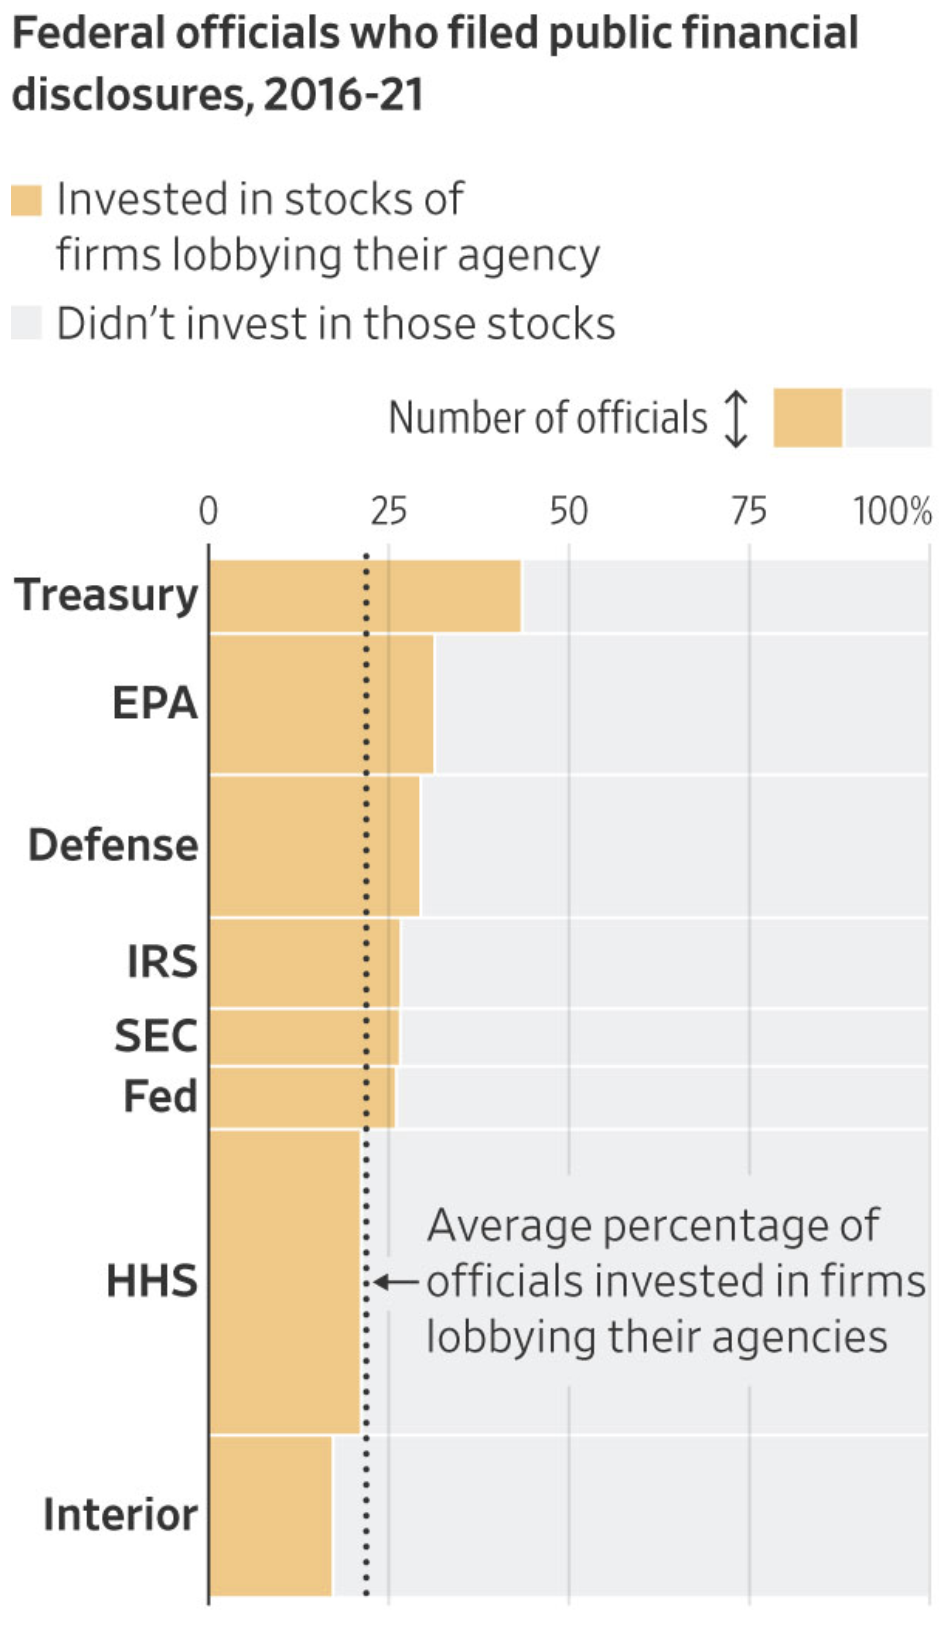 SEC-medewerkers hebben geïnvesteerd in bedrijven die lobbyen bij hun bureau, 2016-2021